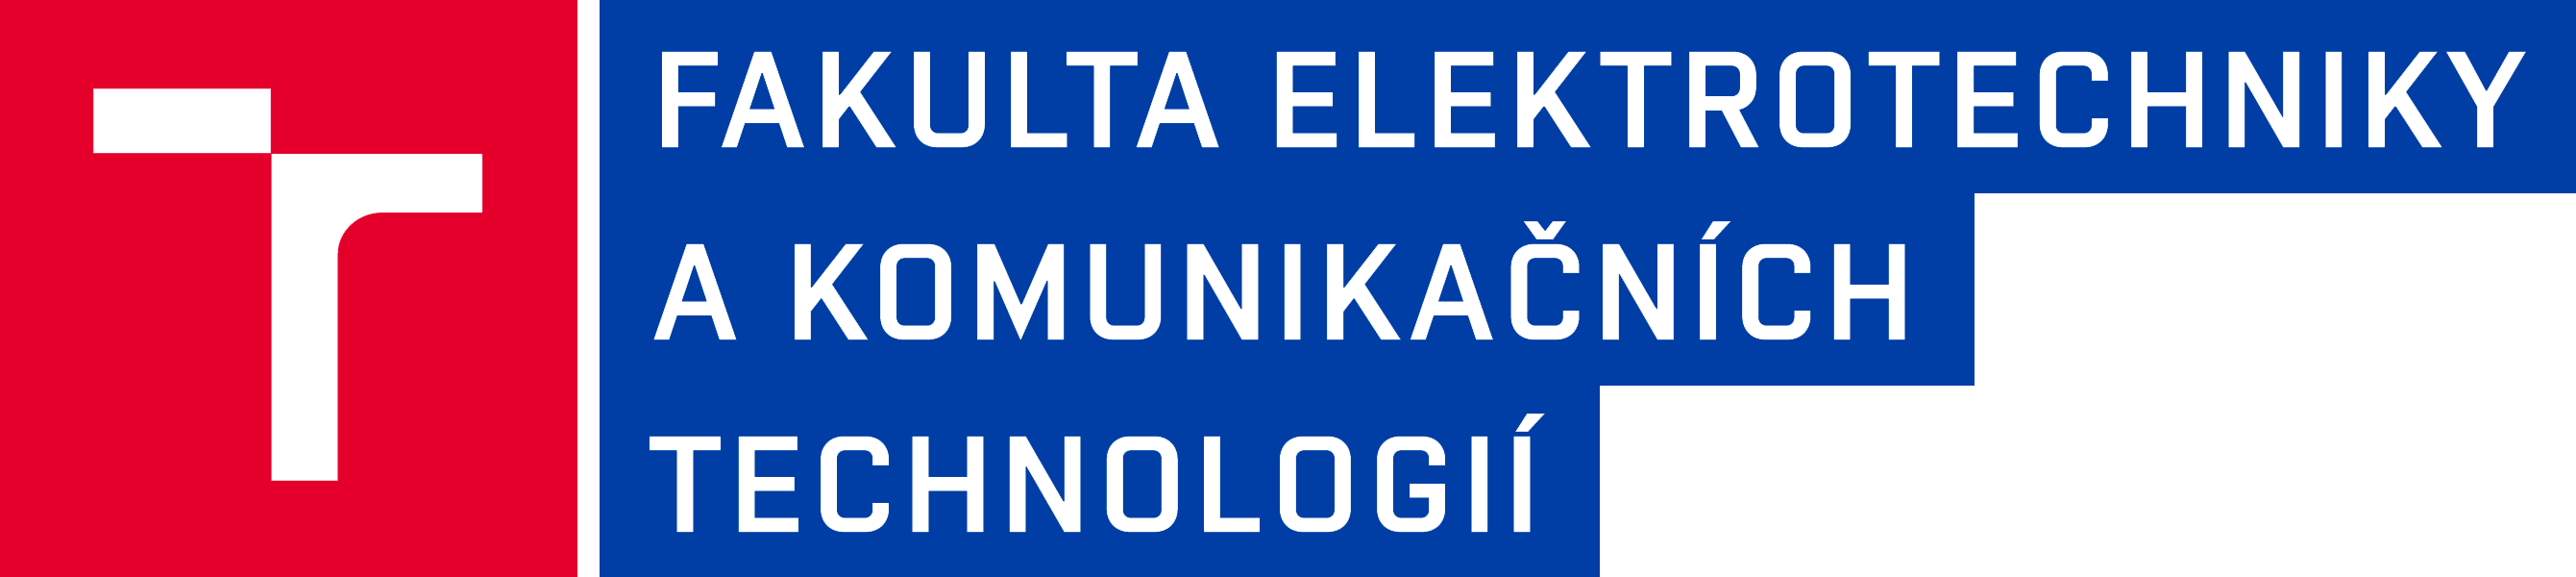 FEKT logo